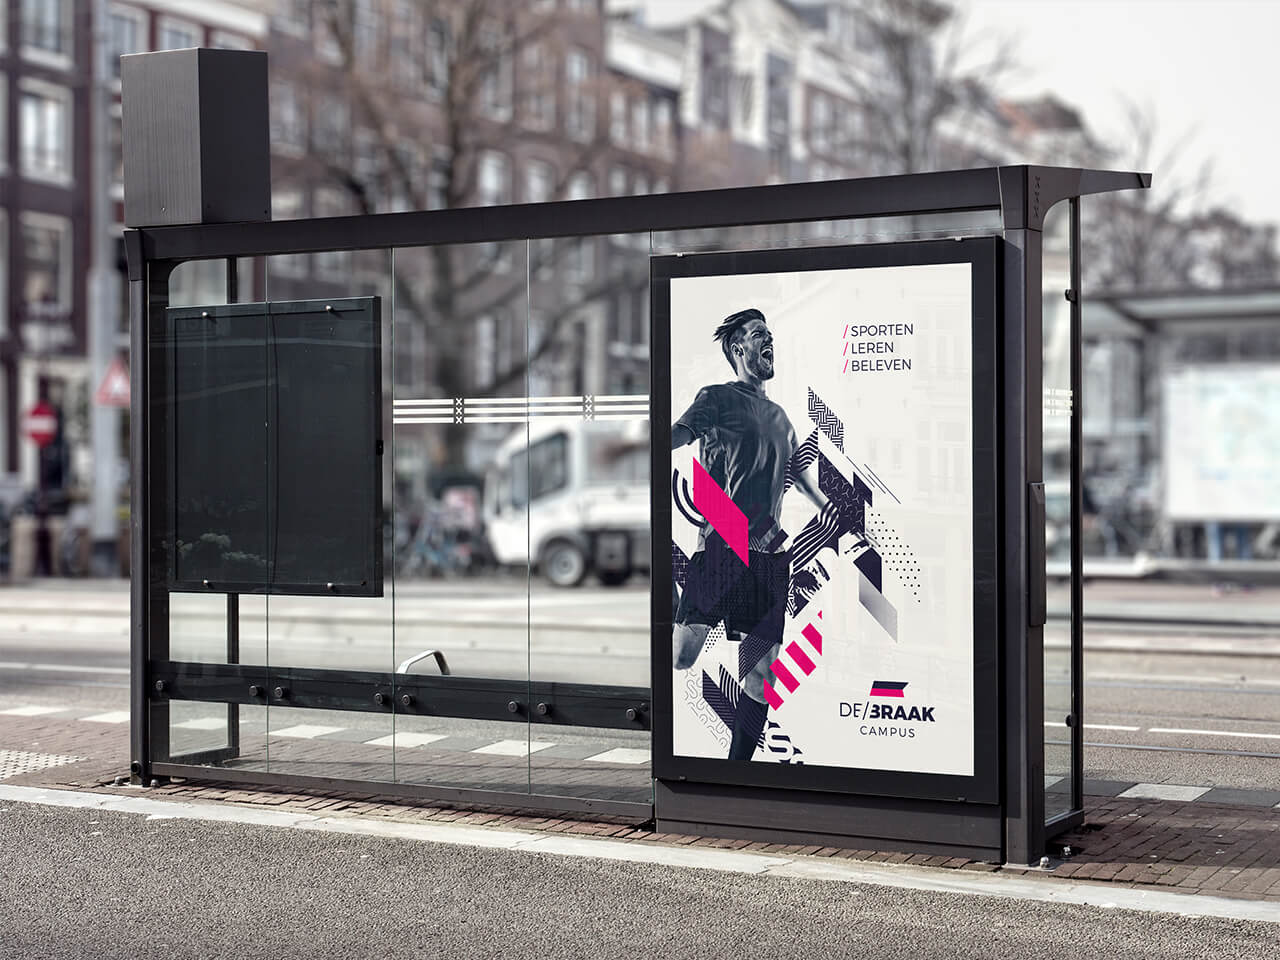 Abri met poster voor Campus De Braak met voetballer en grafische patronen